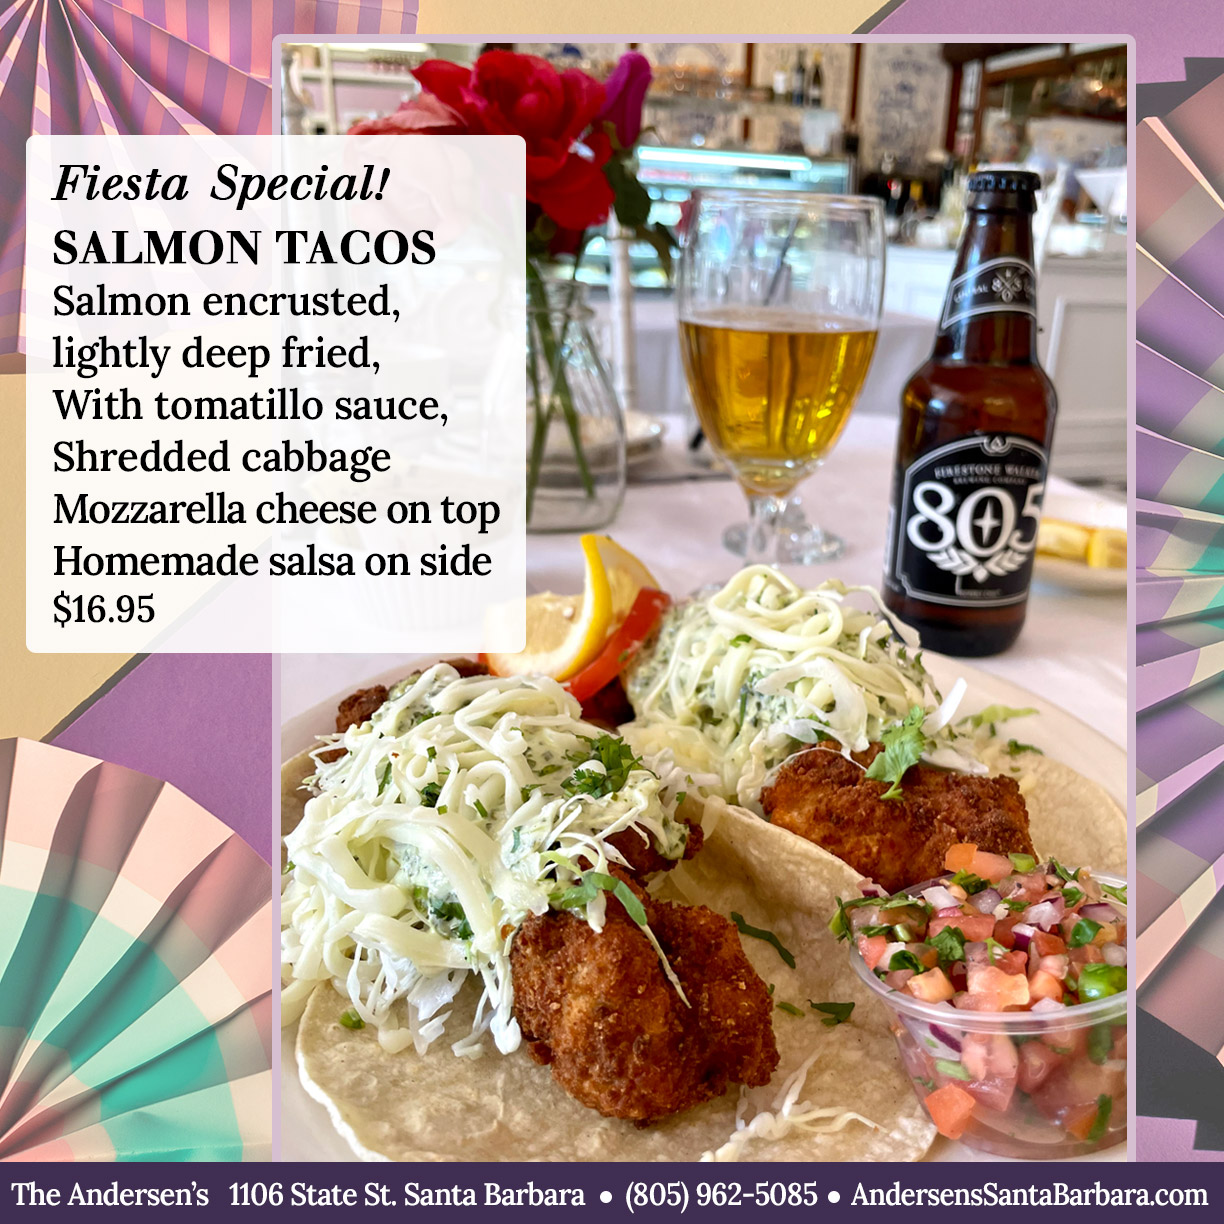 Salmon Tacos FIESTA SPECIAL - The Andersen’s Danish Bakery & Restaurant